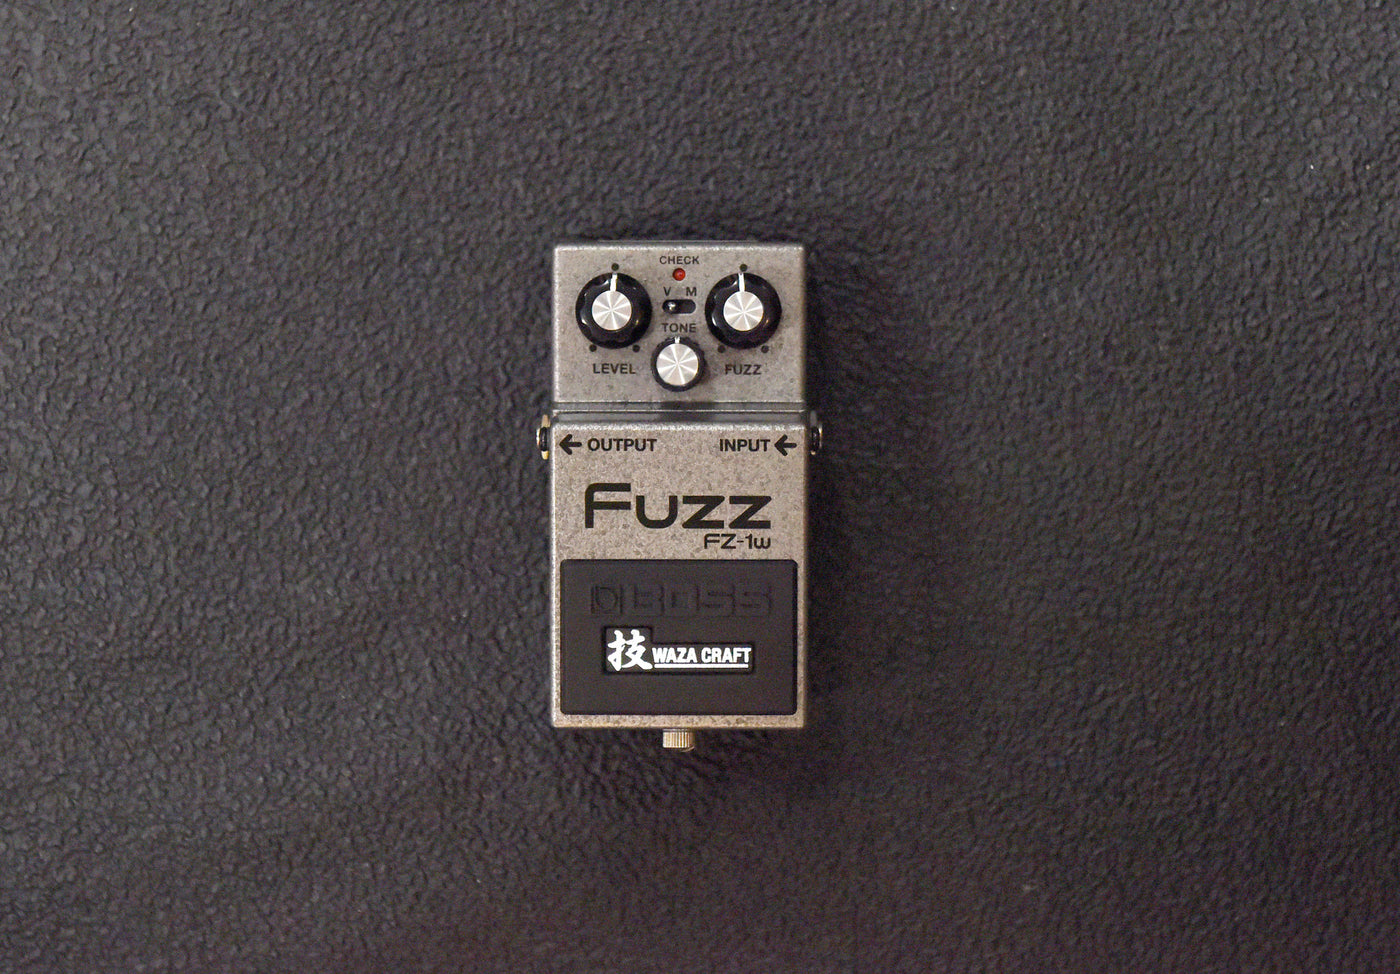 FZ-1w Fuzz Waza Craft